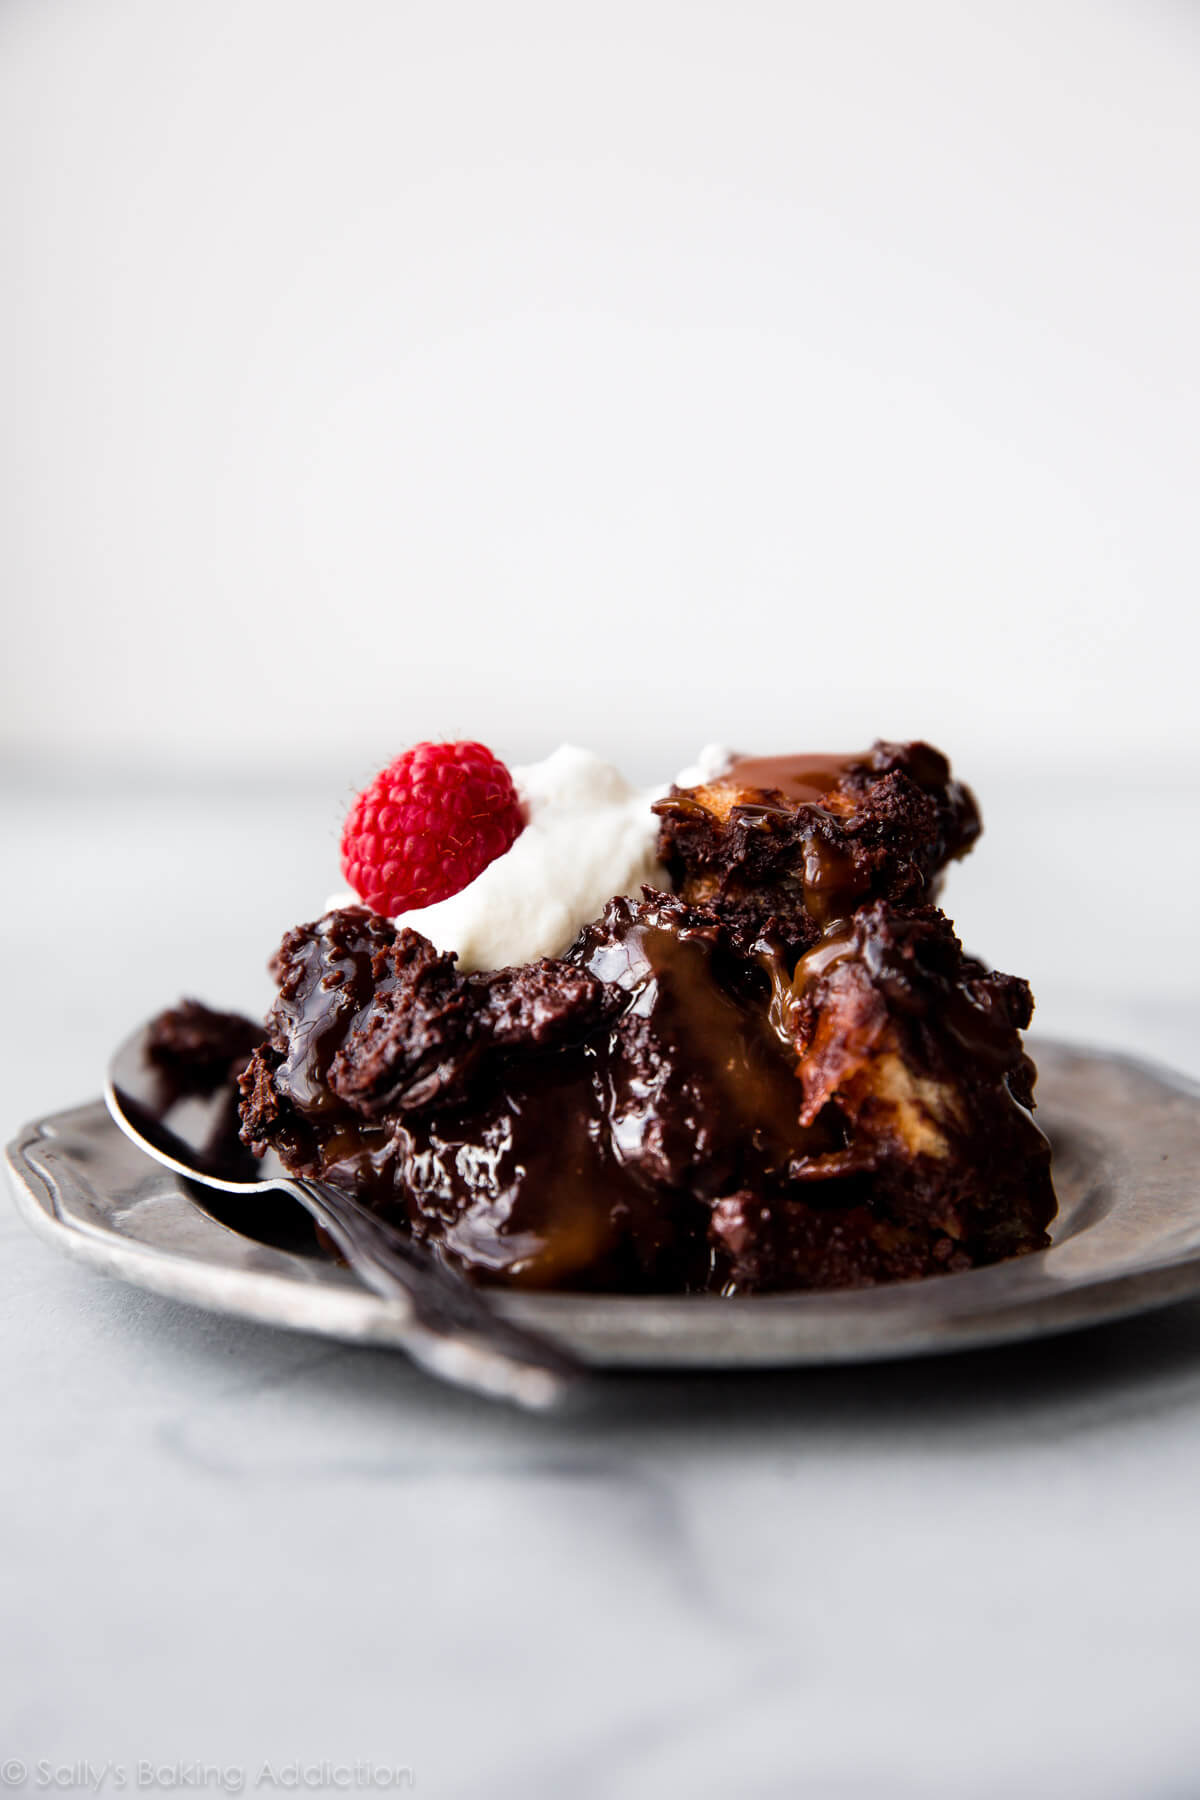 Ce pudding au pain au chocolat noir a le goût d'une poêle de brownies chauds et fondants. Pour le meilleur goût et la meilleure texture, utilisez du pain challah et du vrai chocolat. Recette sur sallysbakingaddiction.com